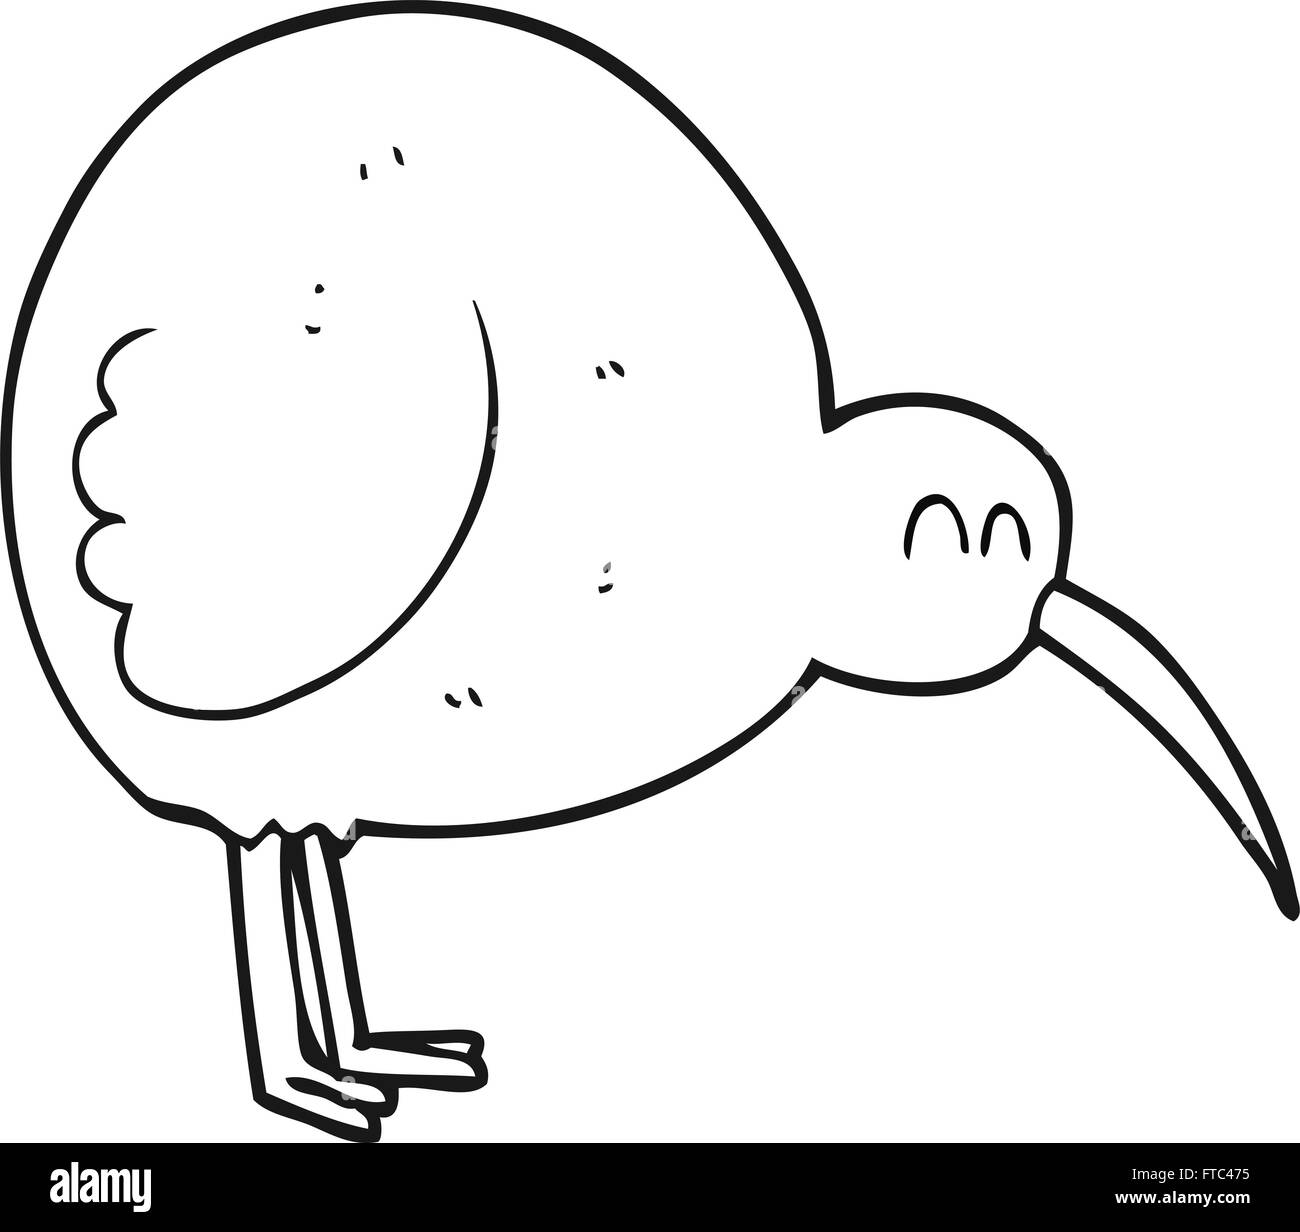 freihändig gezeichnet schwarz / weiß Cartoon-Kiwi-Vogel Stock Vektor